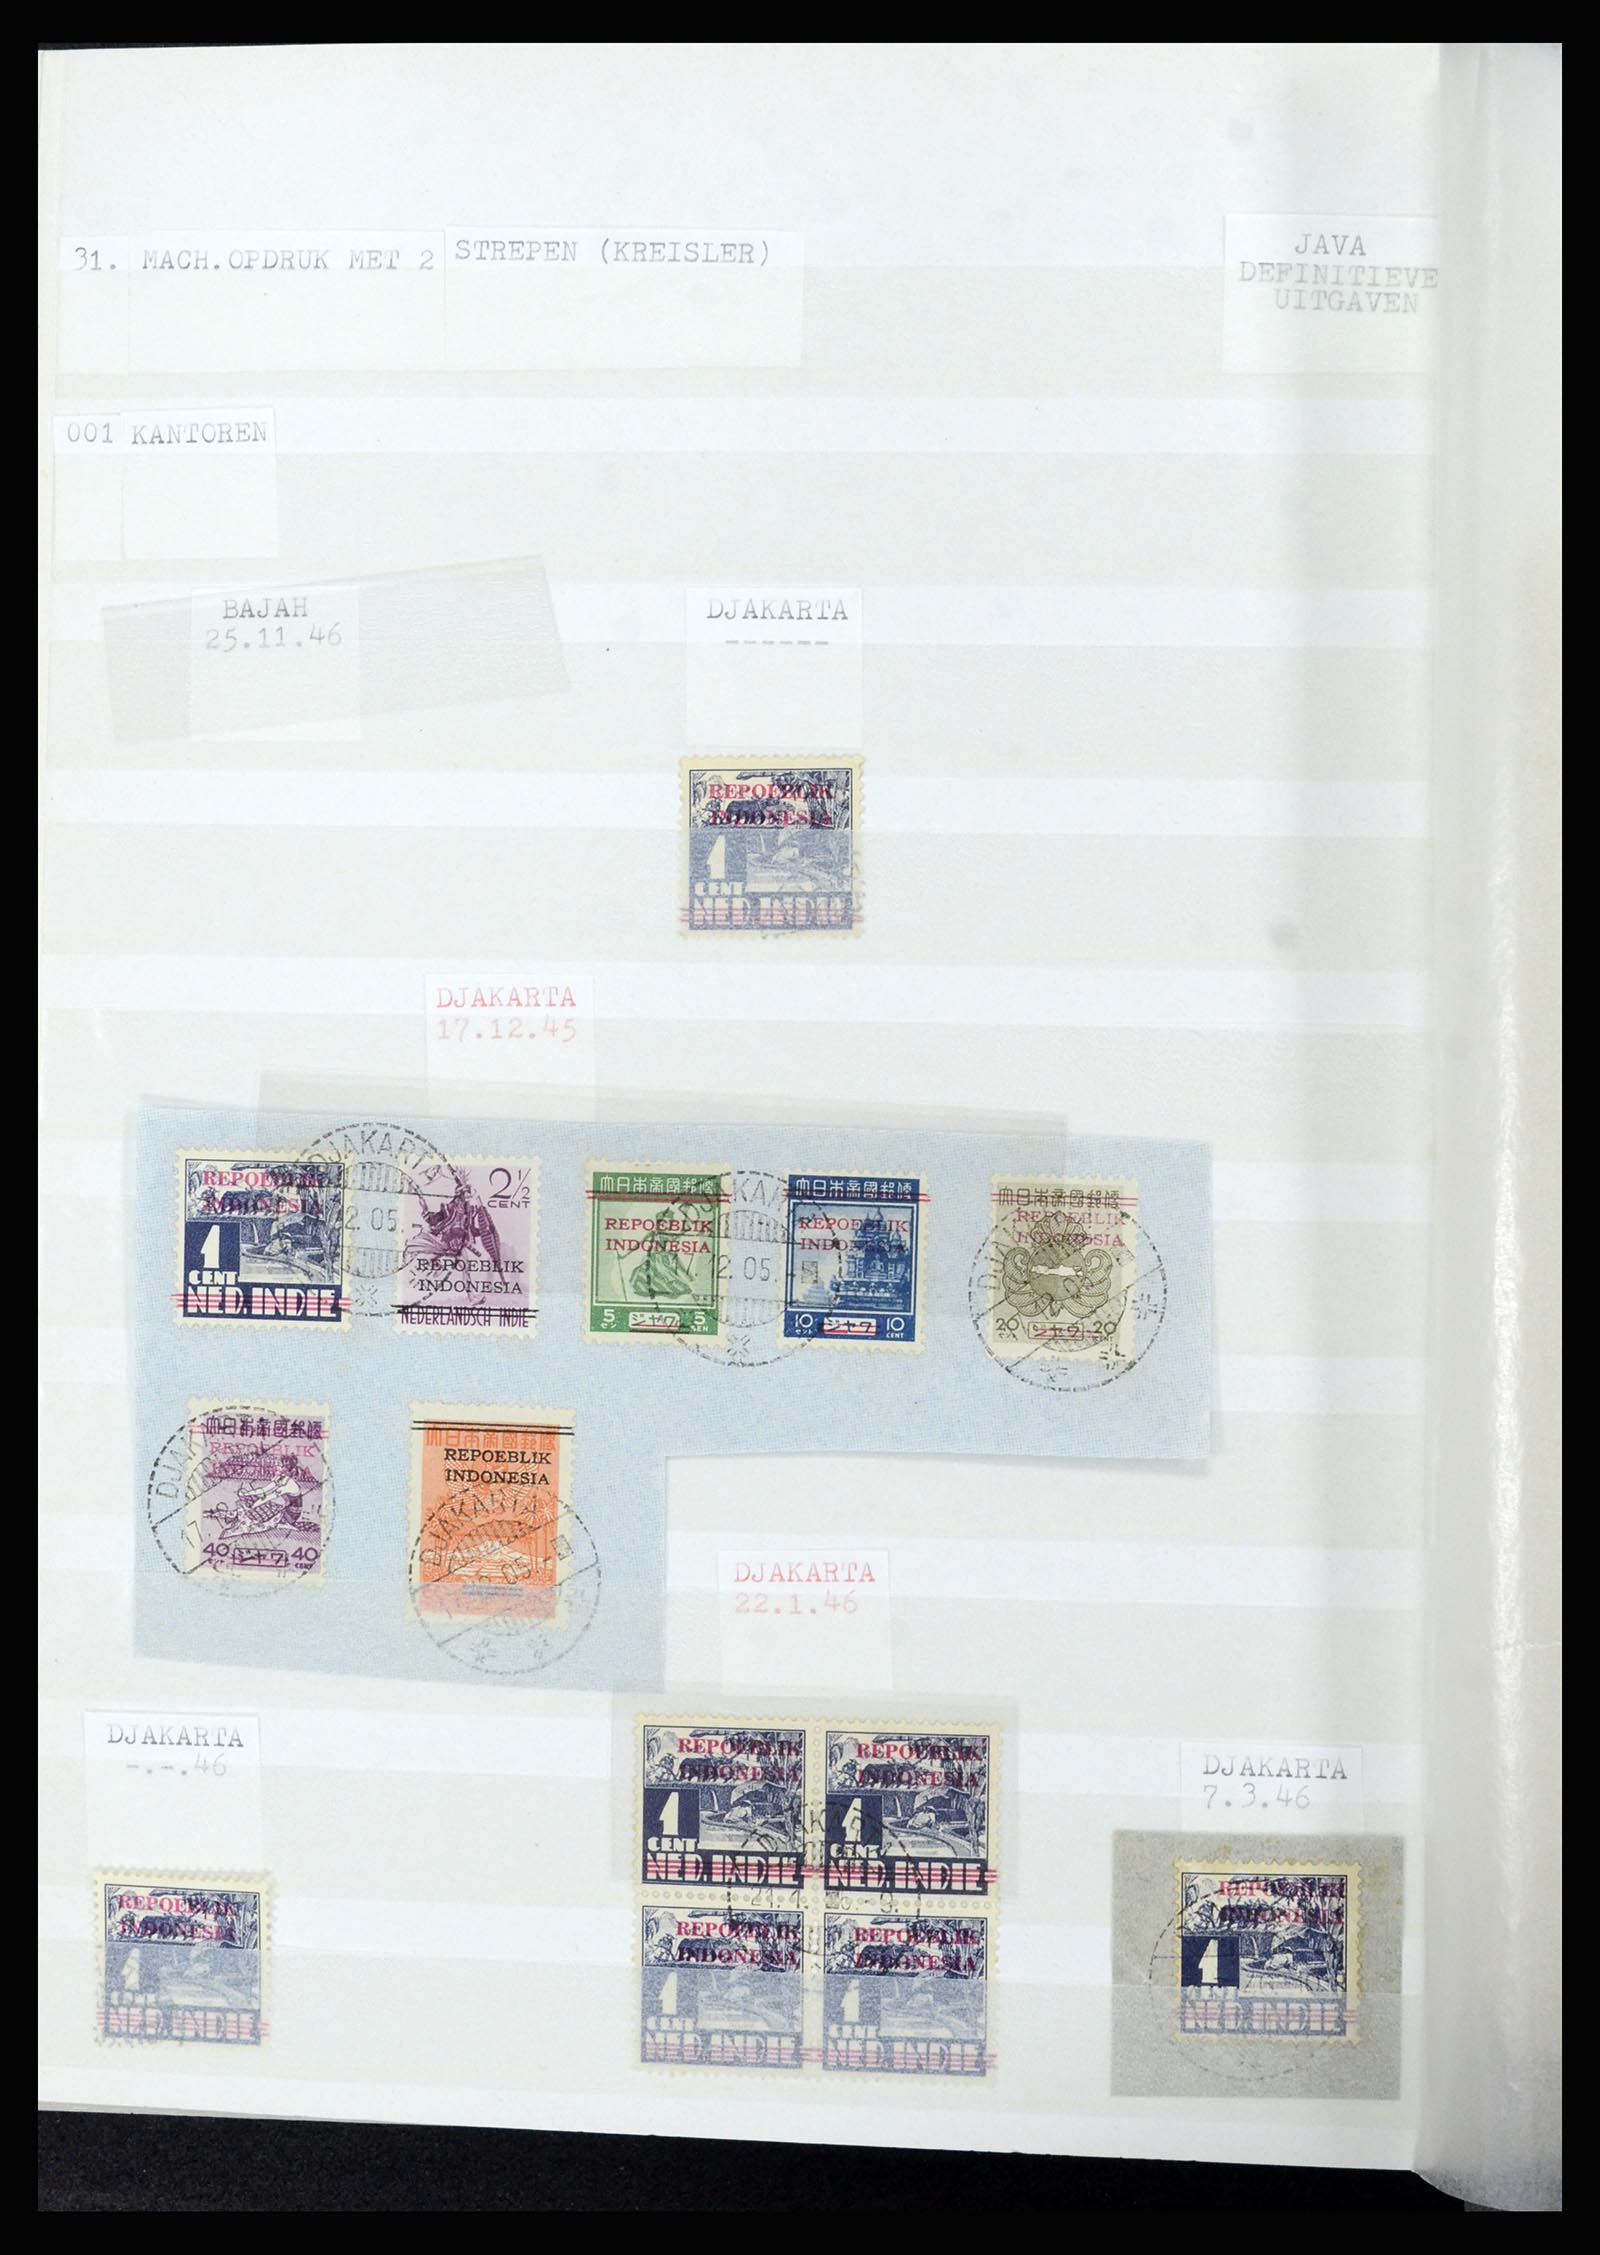 36742 296 - Stamp collection 36742 Dutch Indies interim period 1945-1949.